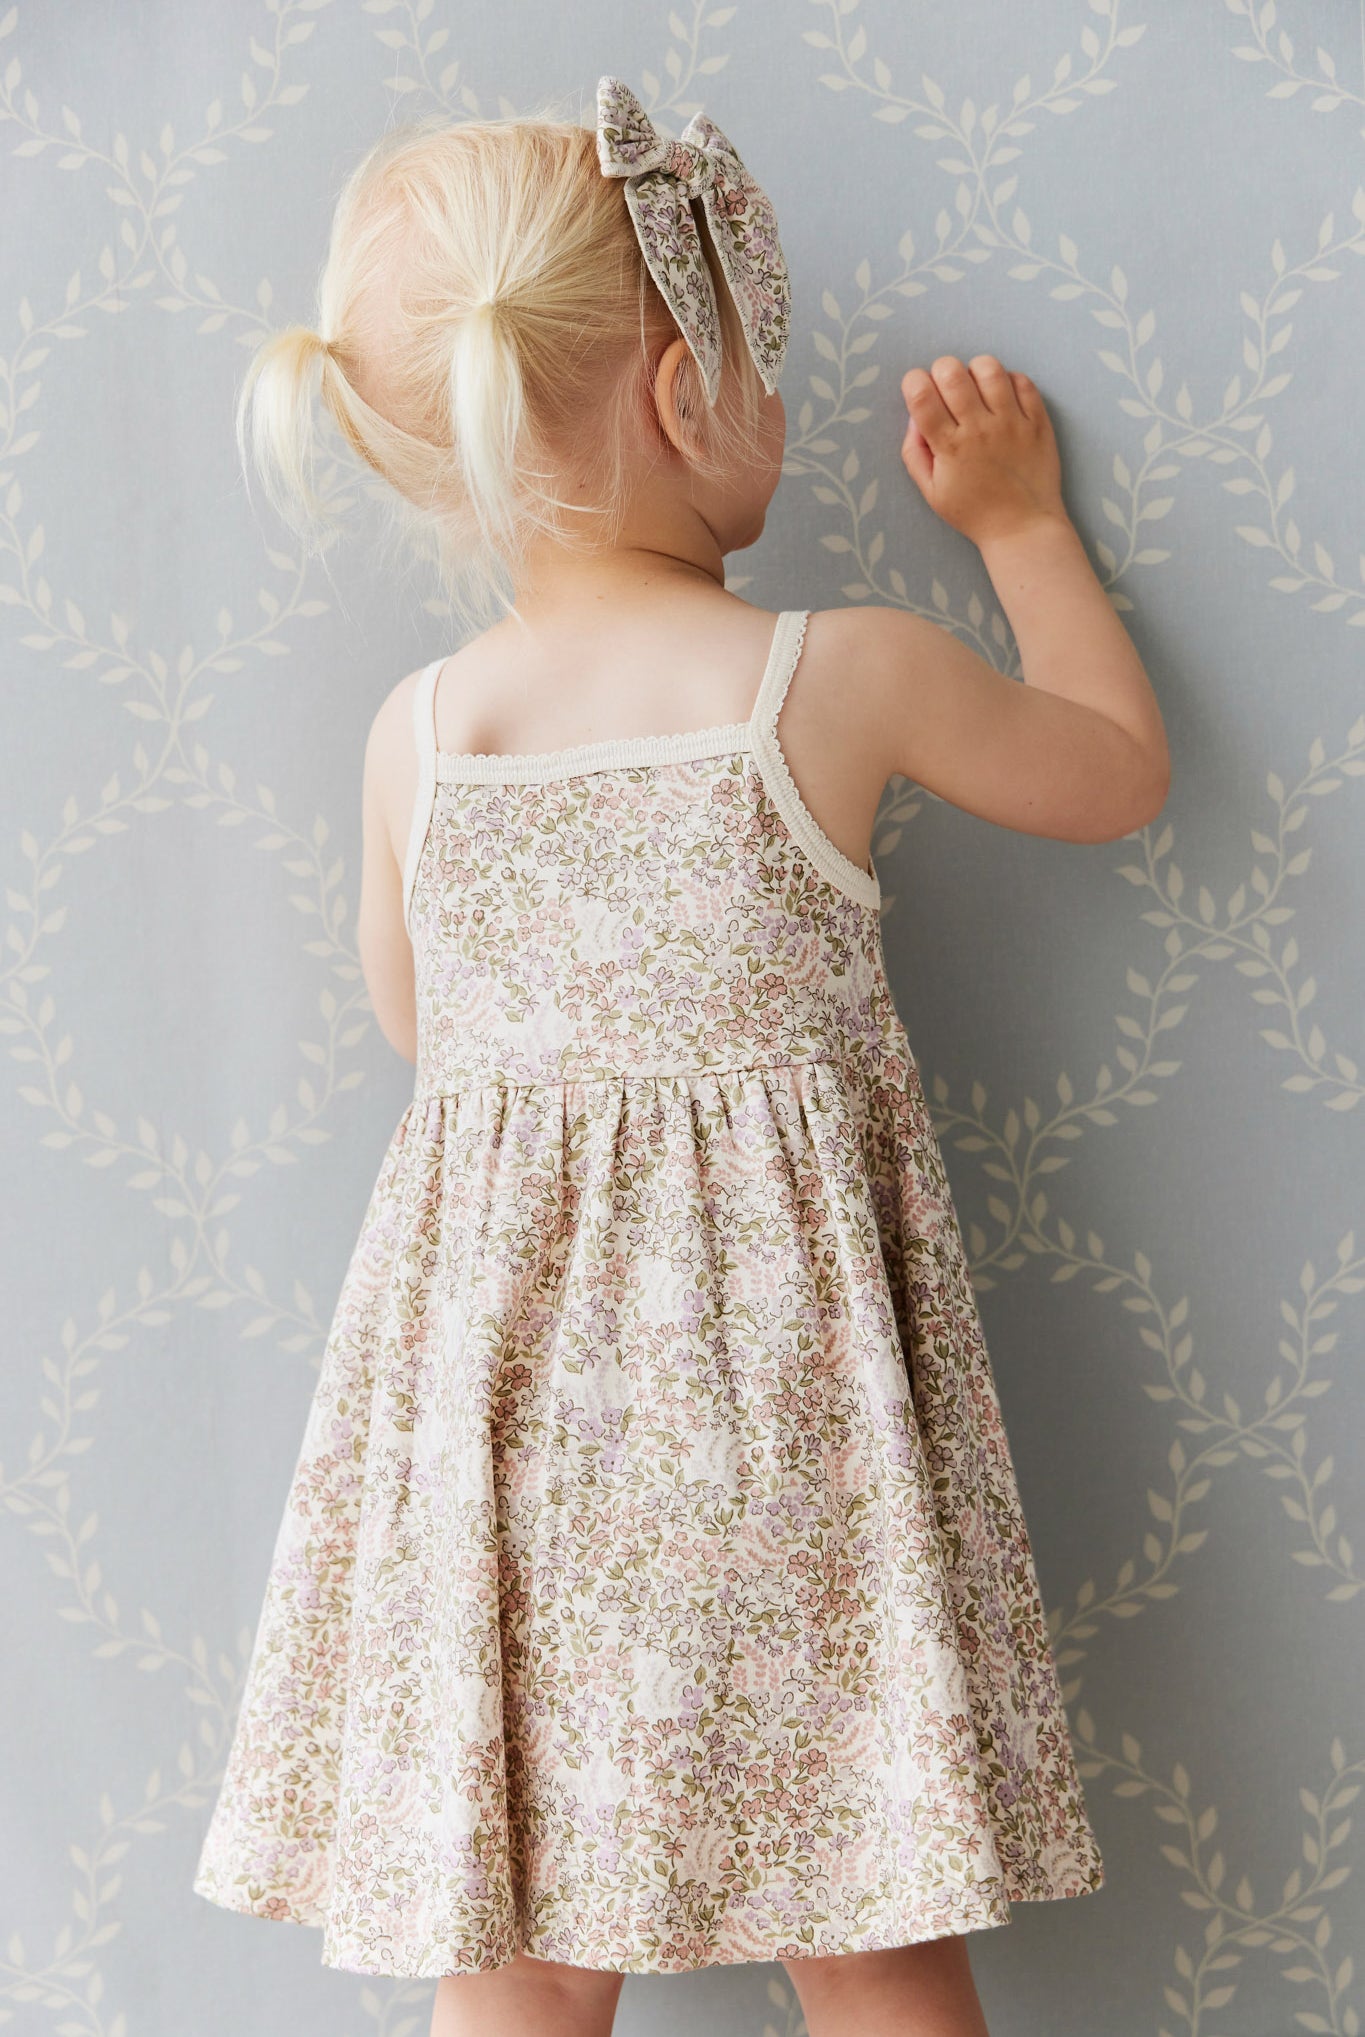 Toddler summer dress